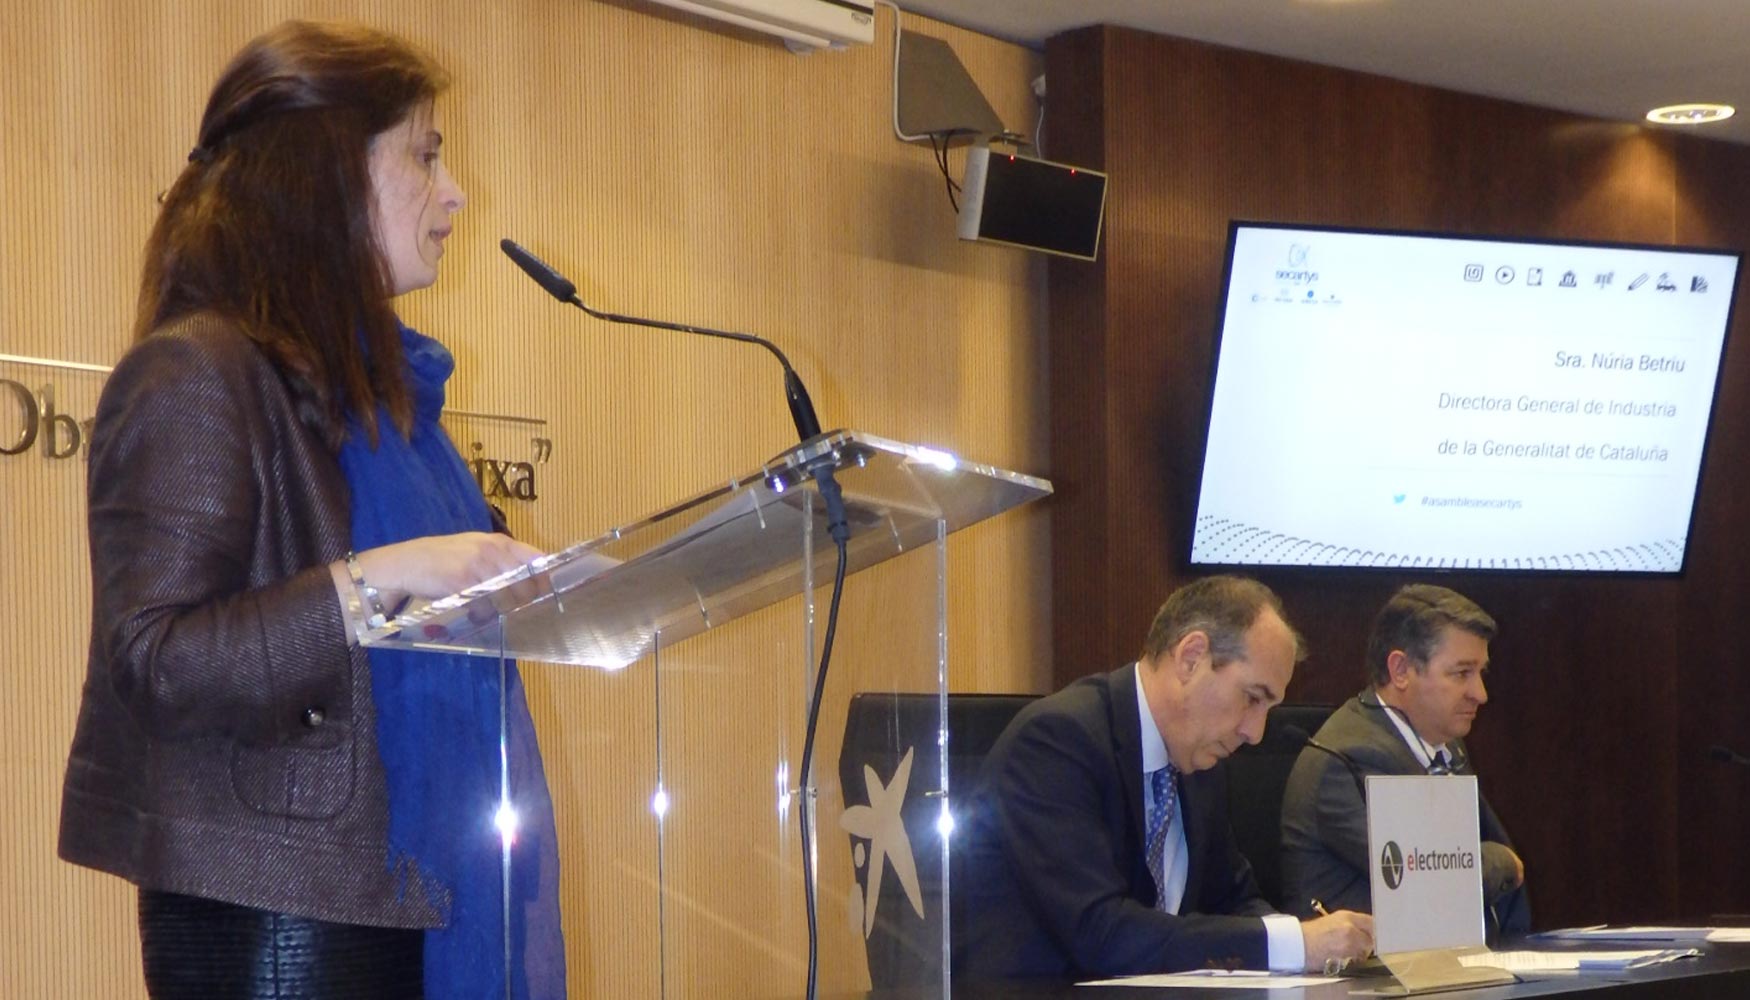 Nria Betriu, directora general de Industria de la Generalitat de Catalunya